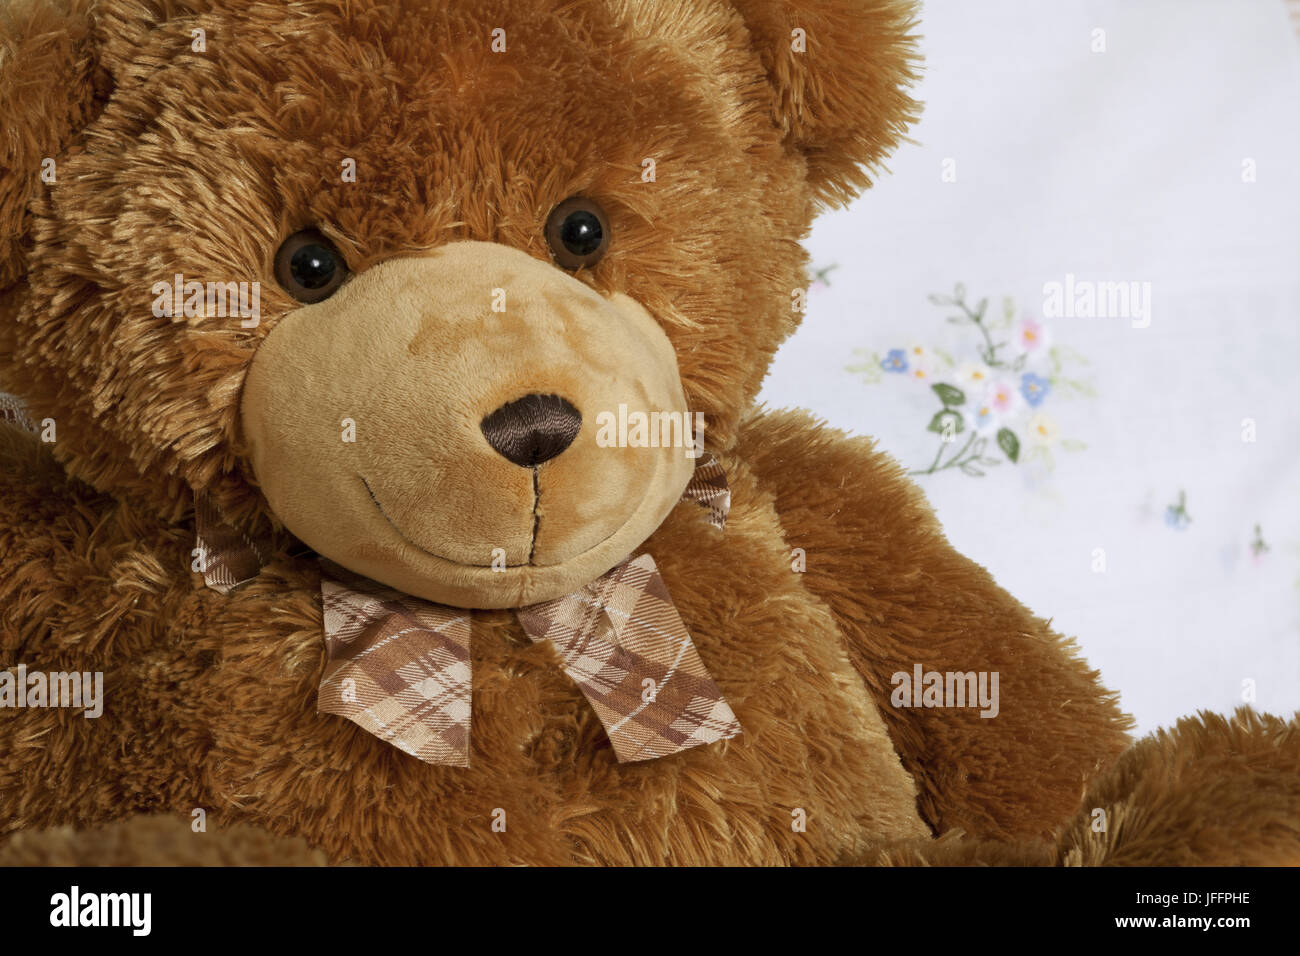 Teddy bear portrait with tie Stock Photo